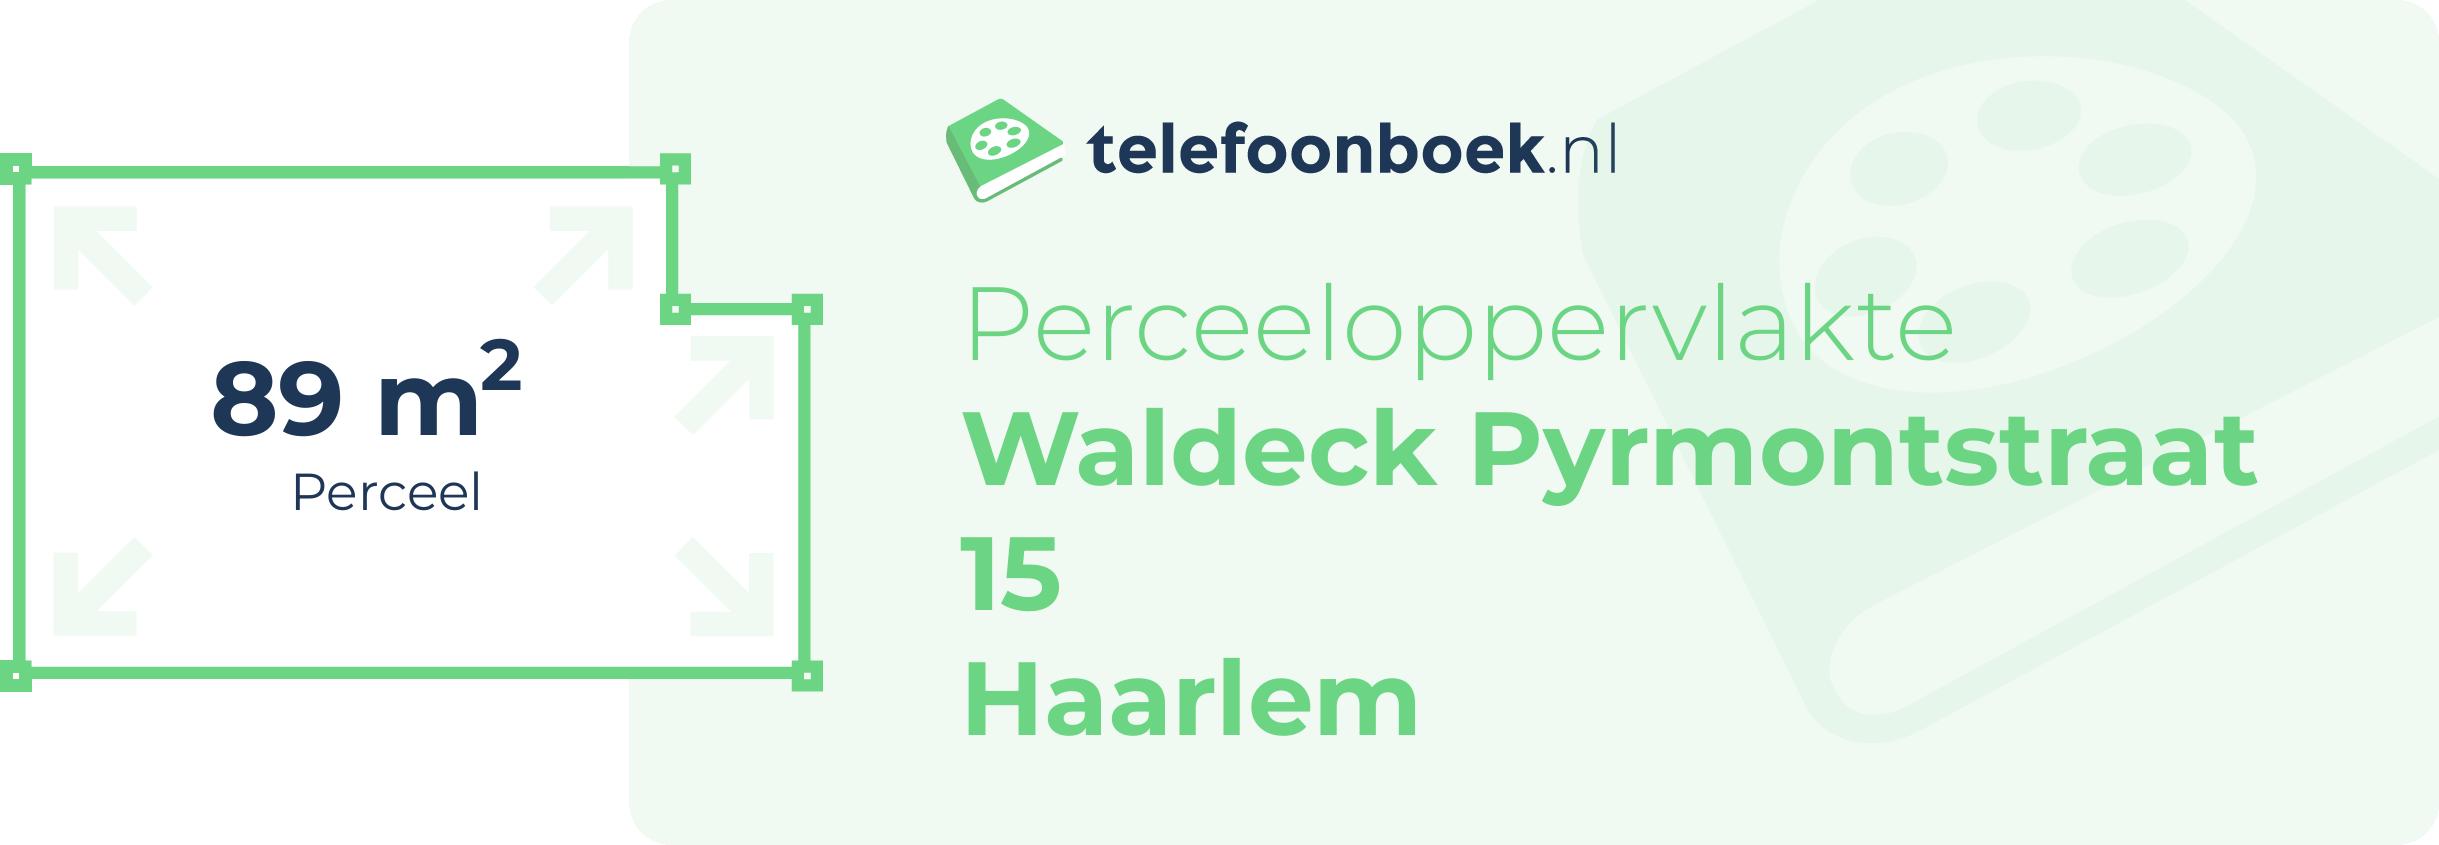 Perceeloppervlakte Waldeck Pyrmontstraat 15 Haarlem